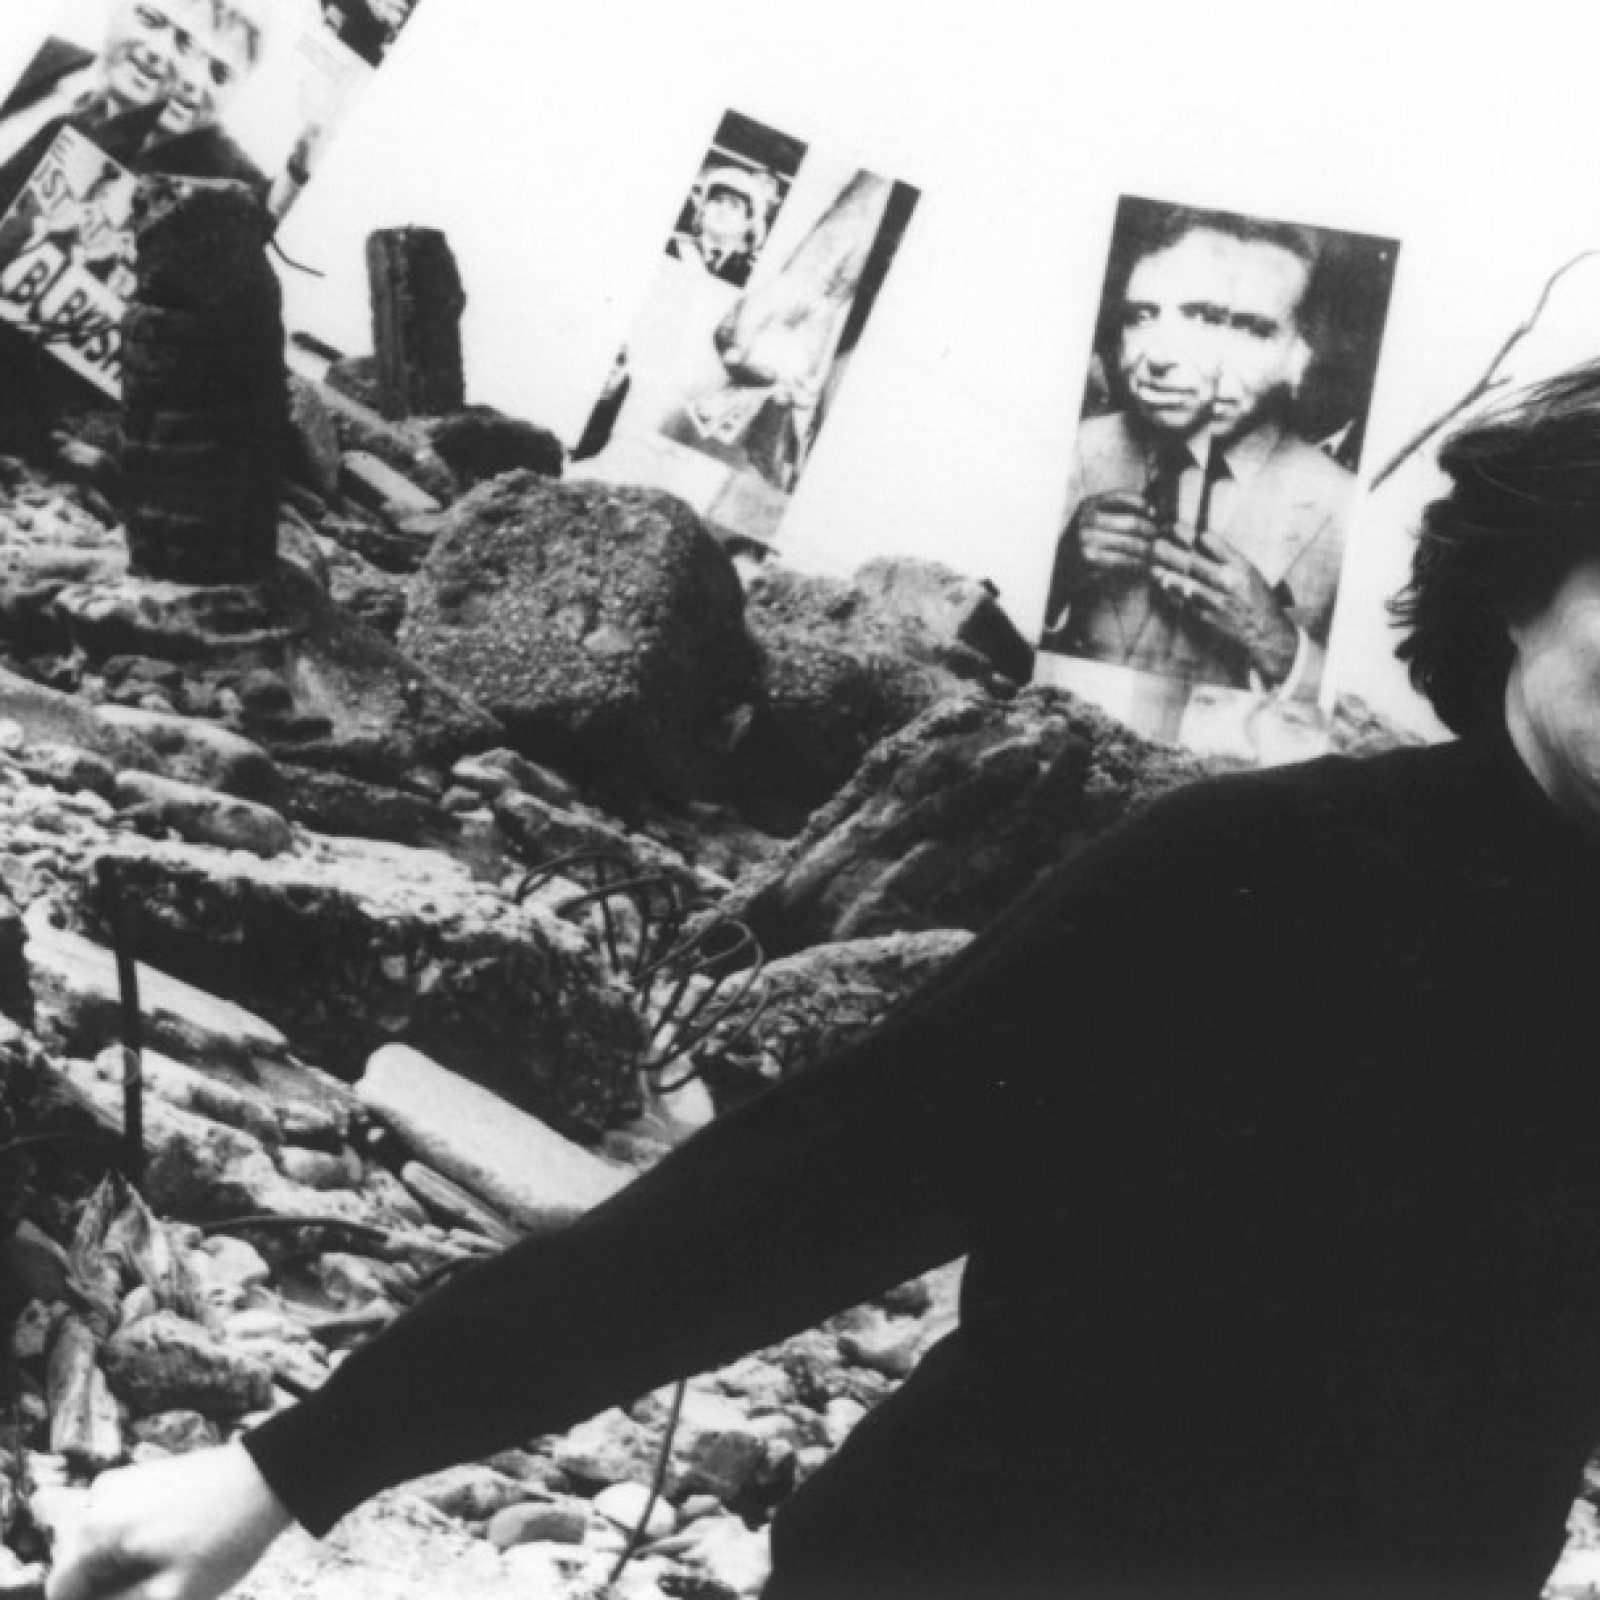 Liliana Maresca en la Costanera Sur con los paneles de la exposición Imagen pública - Altas esferas, 1993. Fotografía: Ludmila. Archivo Liliana Maresca